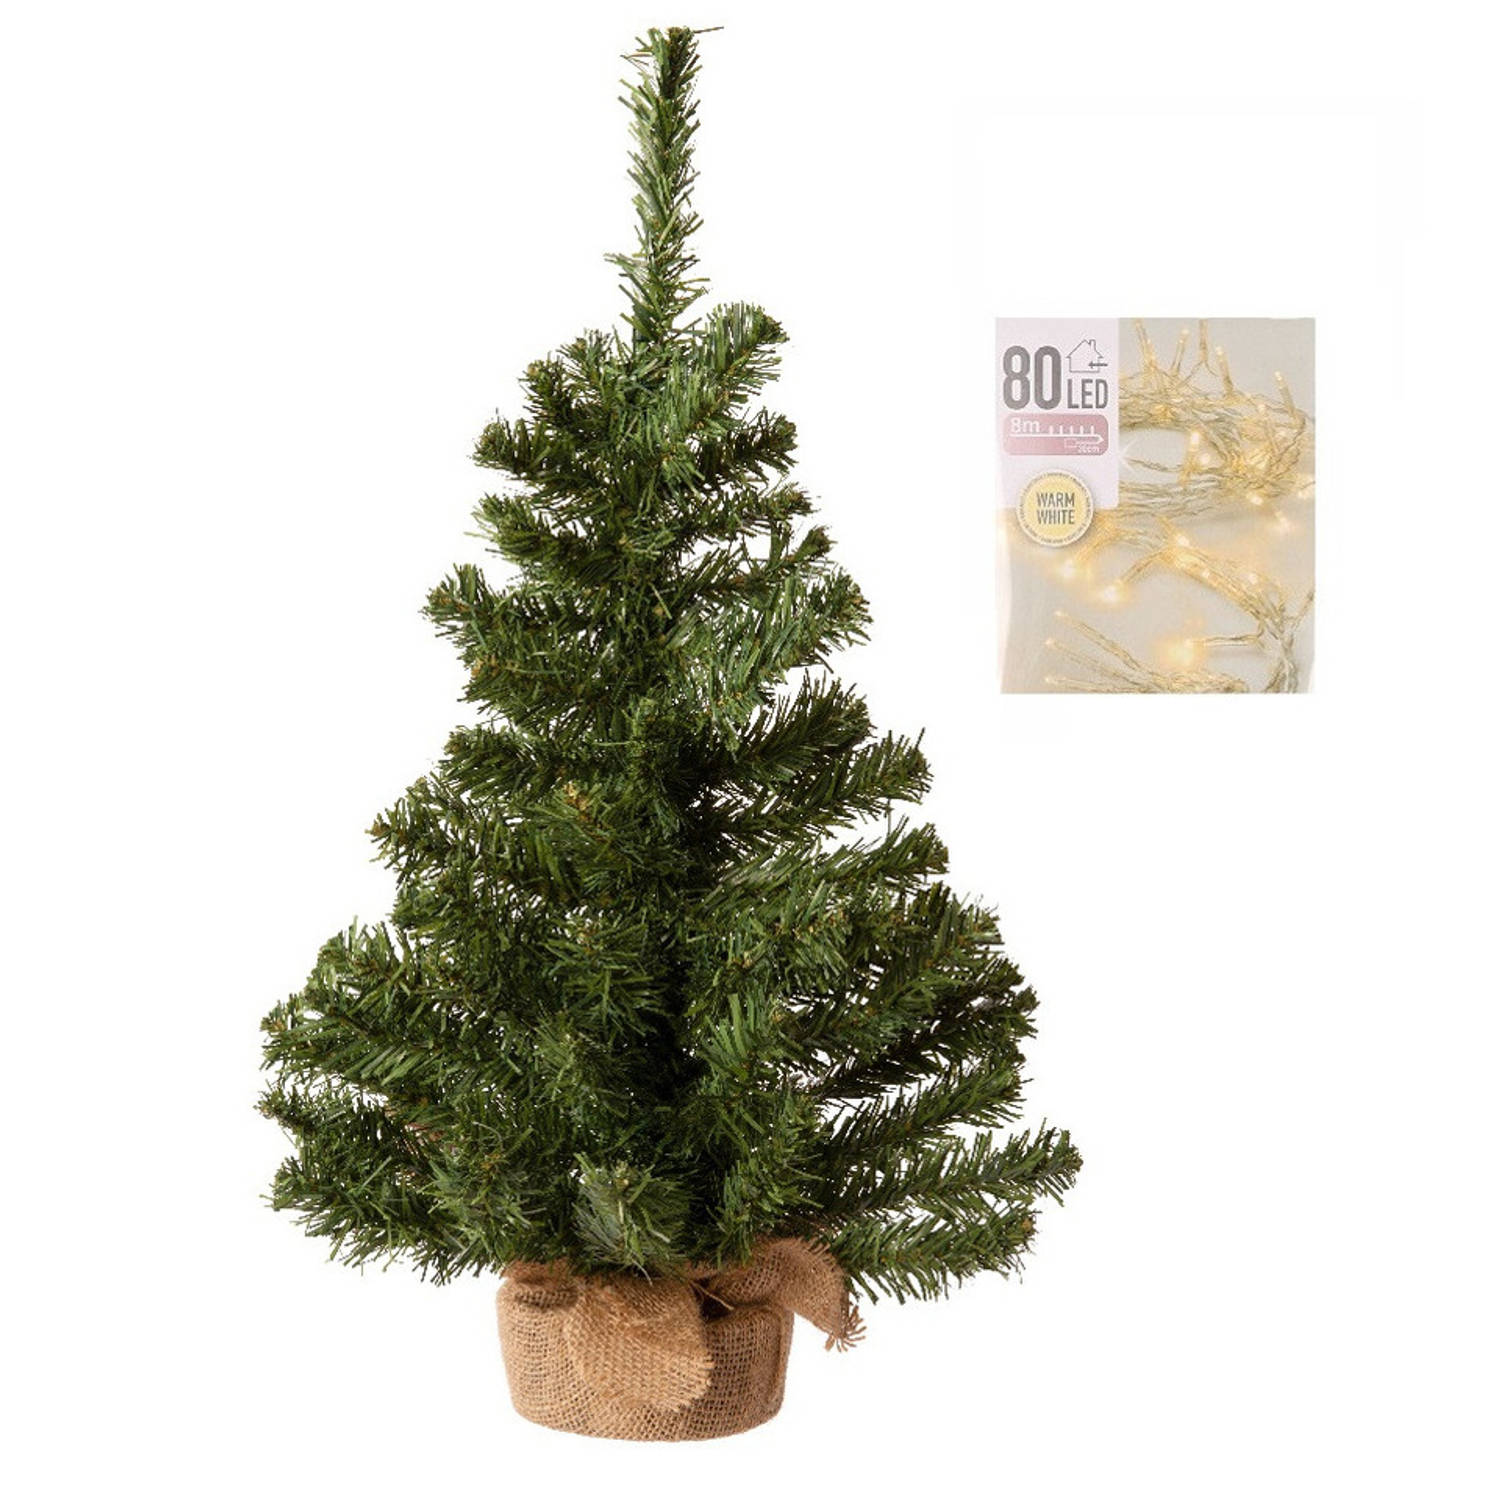 Tijdreeksen Hulpeloosheid Mens Volle kerstboom in jute zak 60 cm inclusief warm witte kerstverlichting -  Kunstkerstboom | Blokker